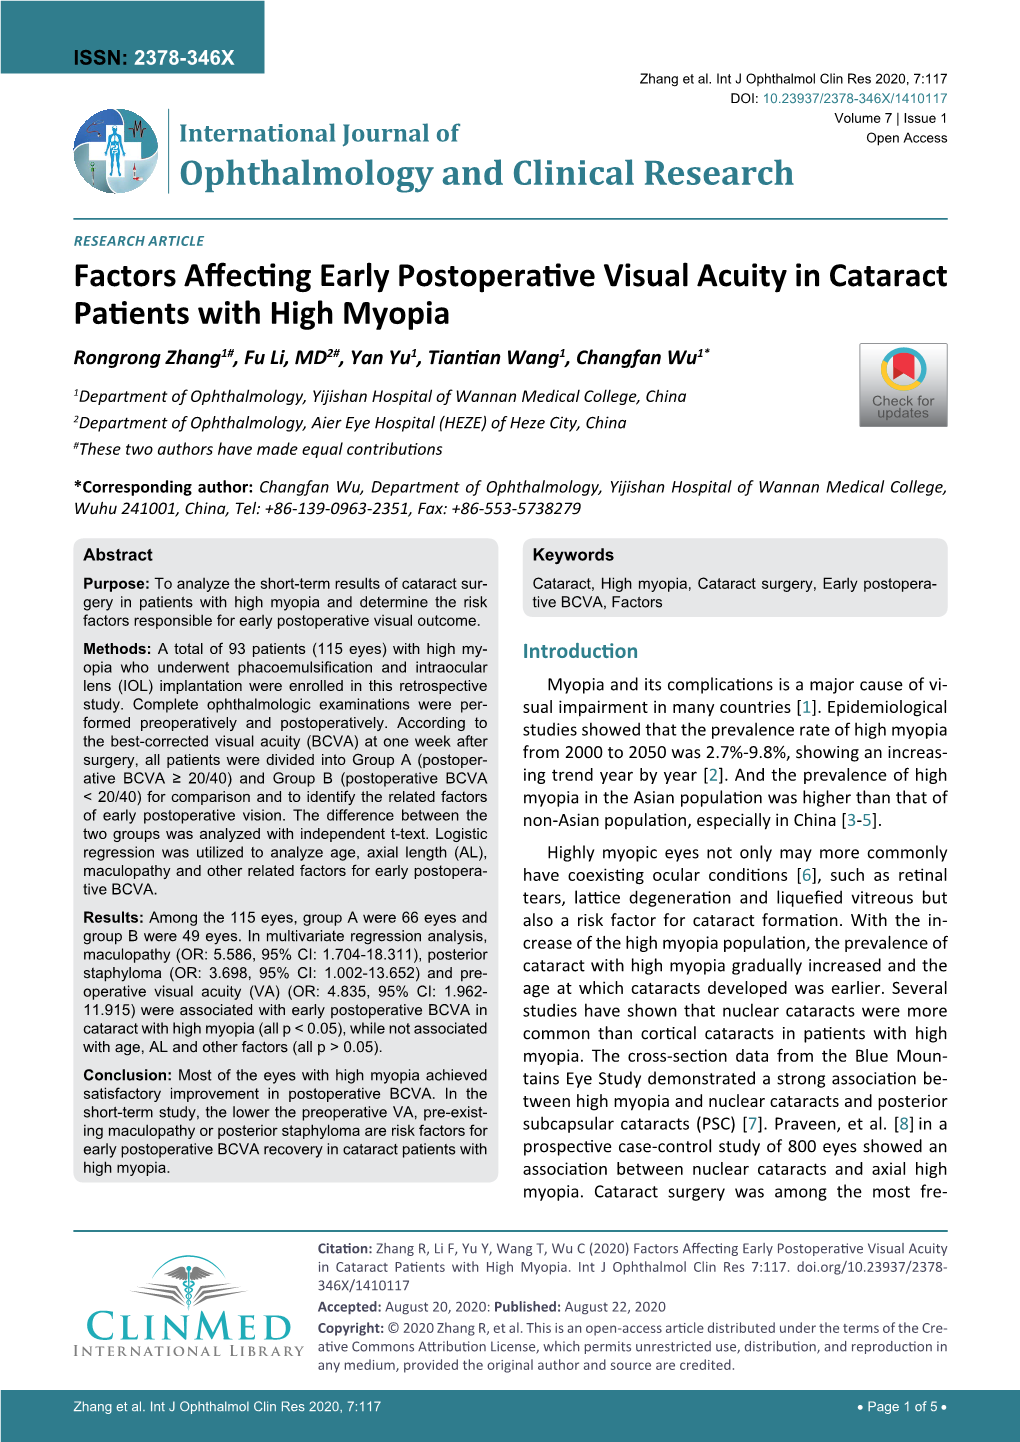 Factors Affecting Early Postoperative Visual Acuity in Cataract Patients with High Myopia Rongrong Zhang1#, Fu Li, MD2#, Yan Yu1, Tiantian Wang1, Changfan Wu1*